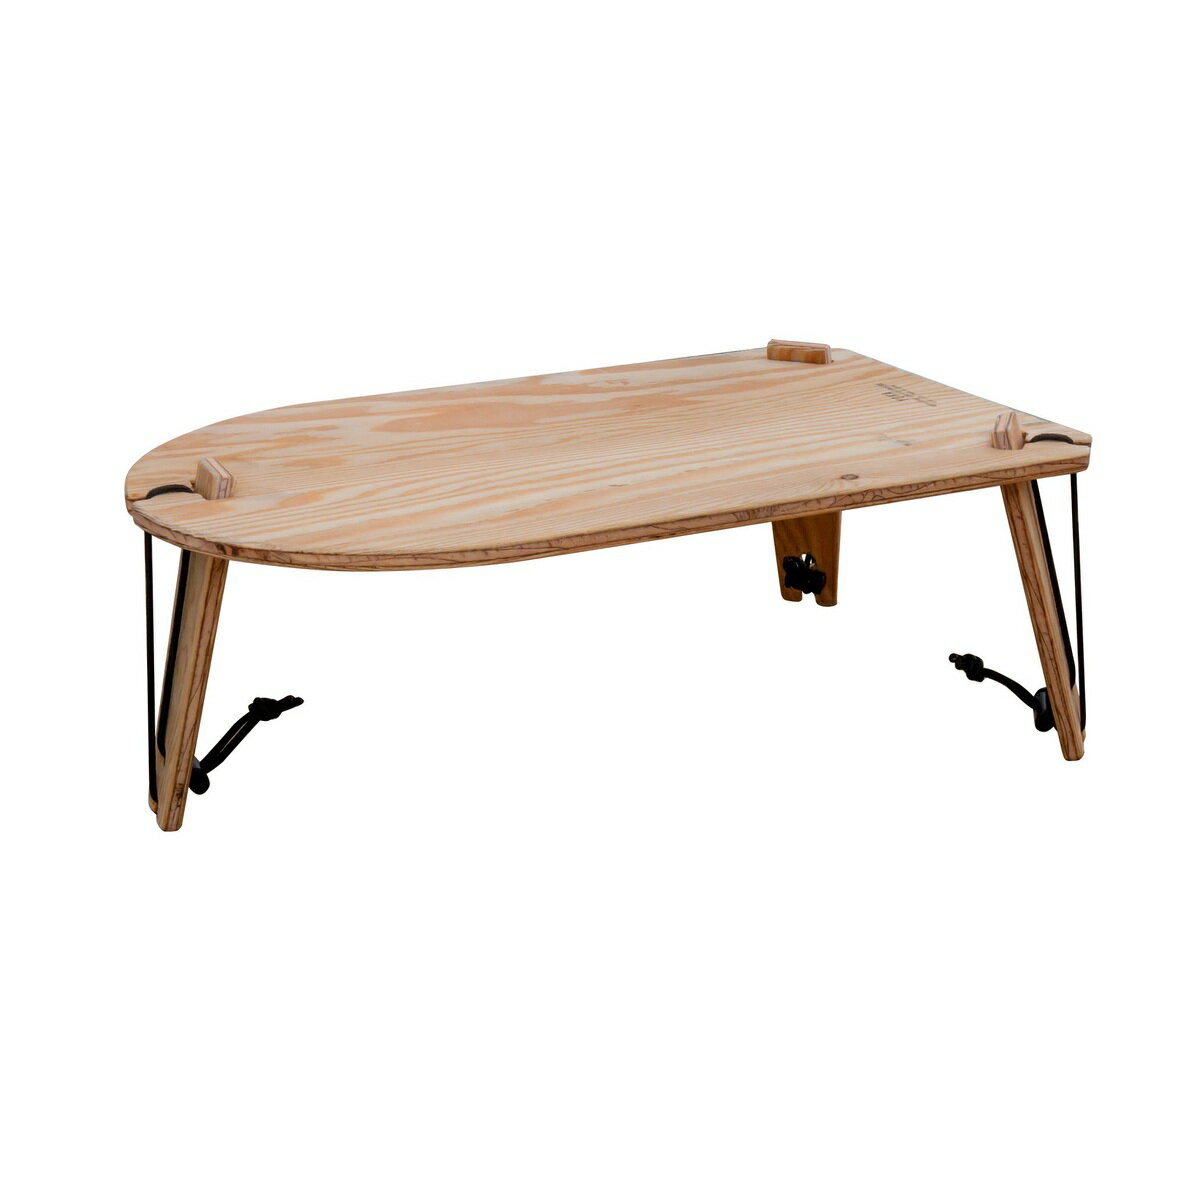 ヨカ トライポッドテーブル・ソロ YOKA TRIPOD TABLE SOLO 木製テーブル ミニテーブル キャンプ アウトドア